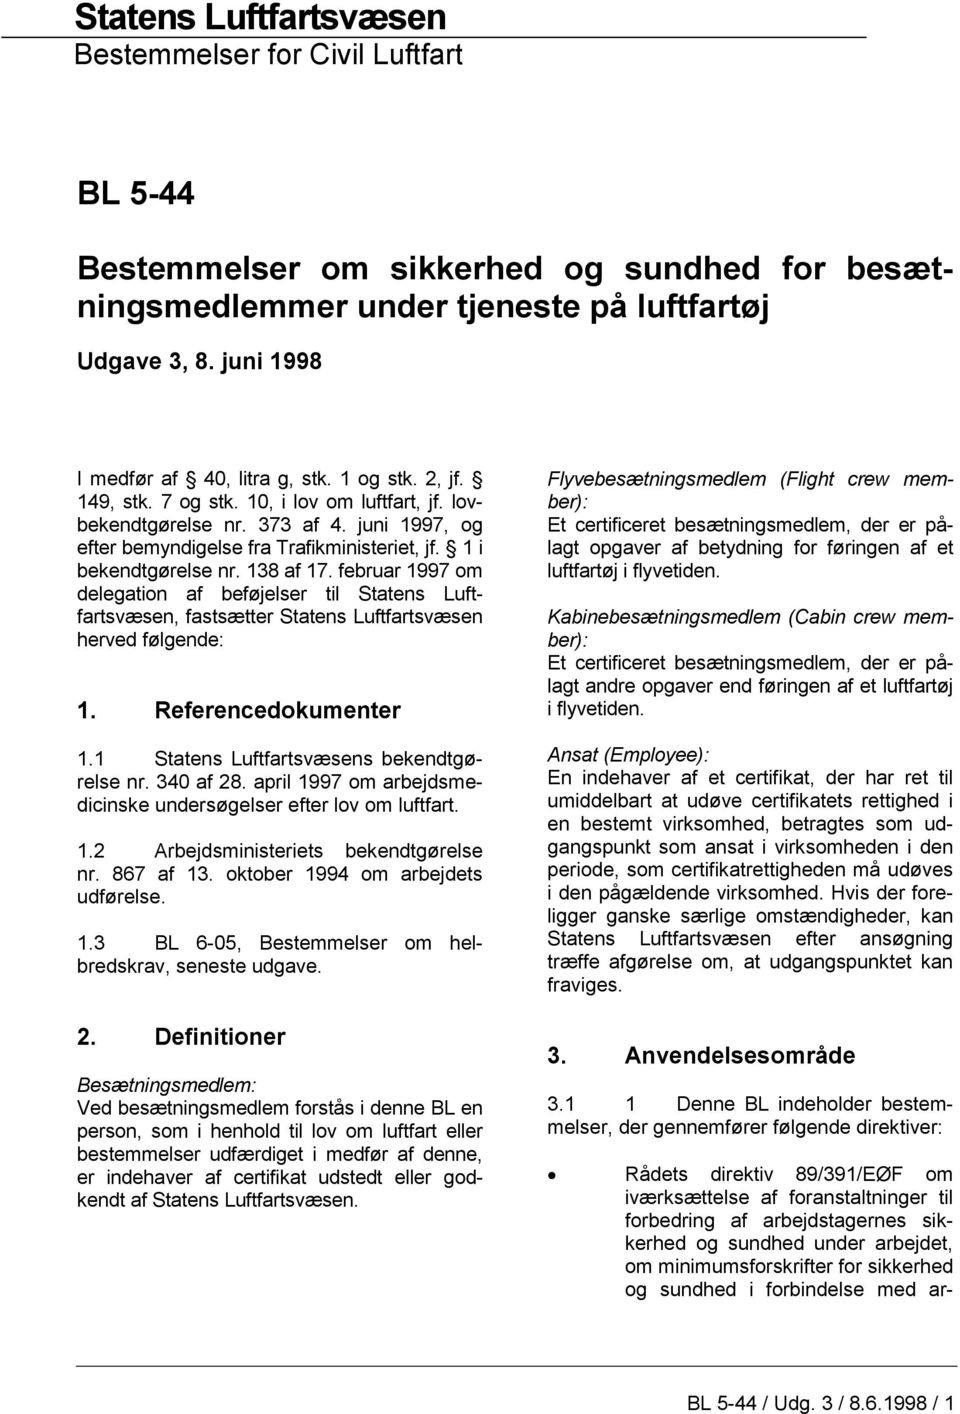 1 i bekendtgørelse nr. 138 af 17. februar 1997 om delegation af beføjelser til Statens Luftfartsvæsen, fastsætter Statens Luftfartsvæsen herved følgende: 1. Referencedokumenter 1.